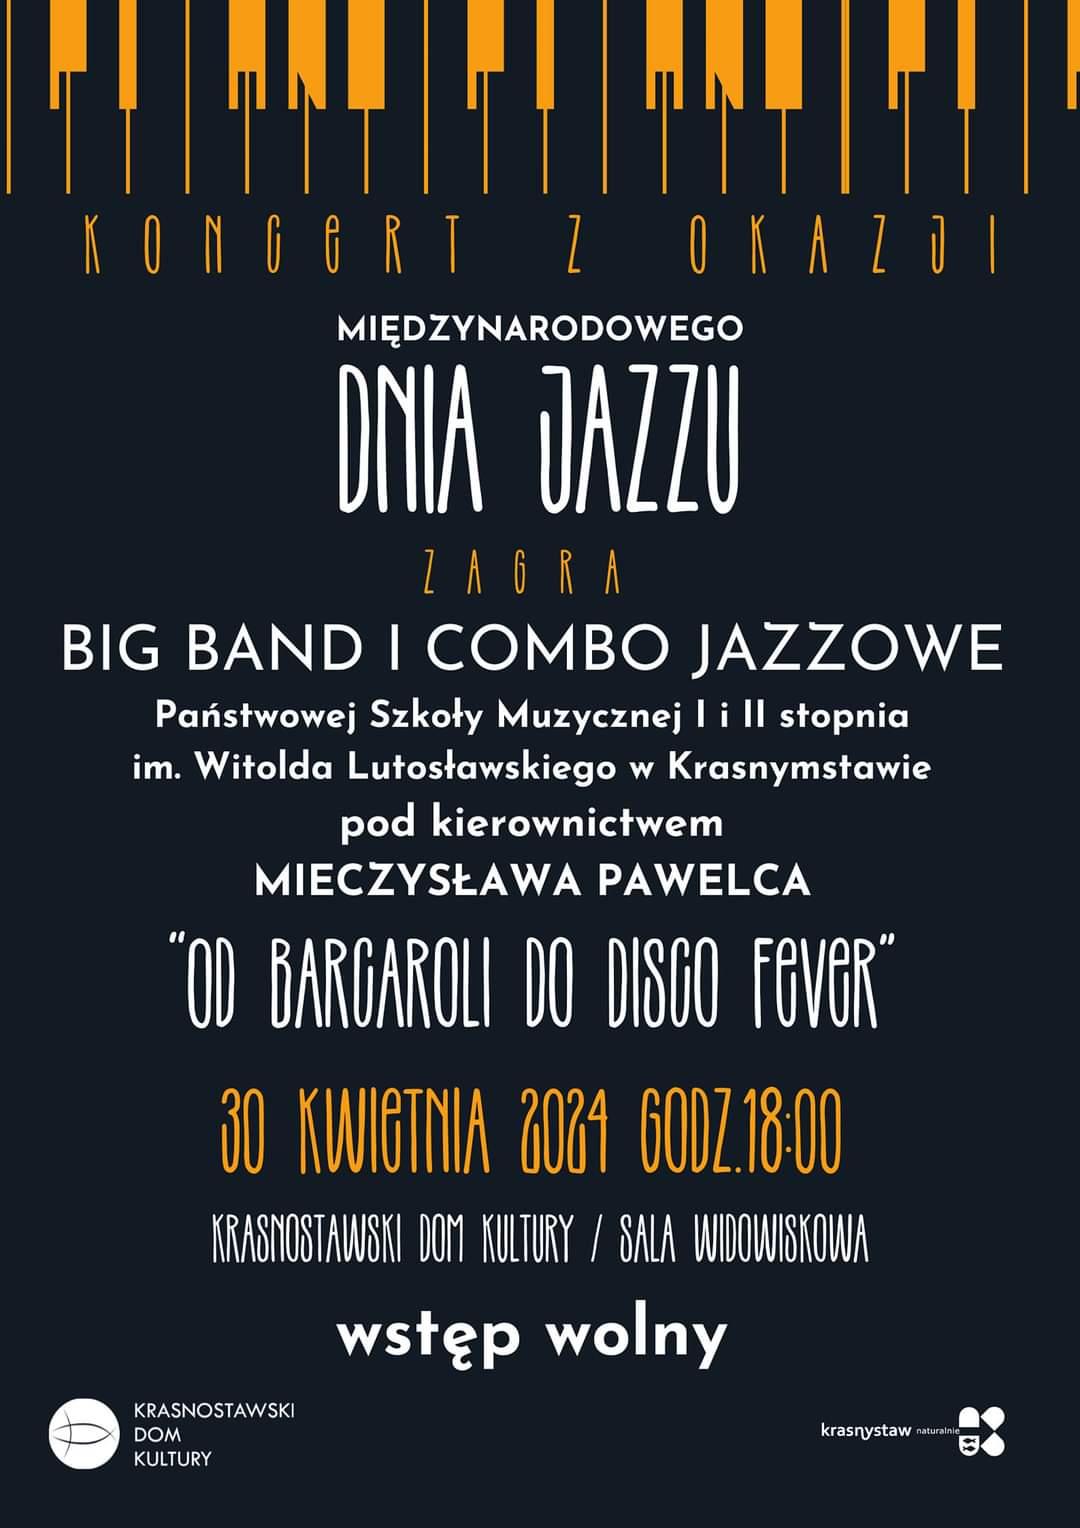 Koncert z okazji międzynarodowego dnia jazzu